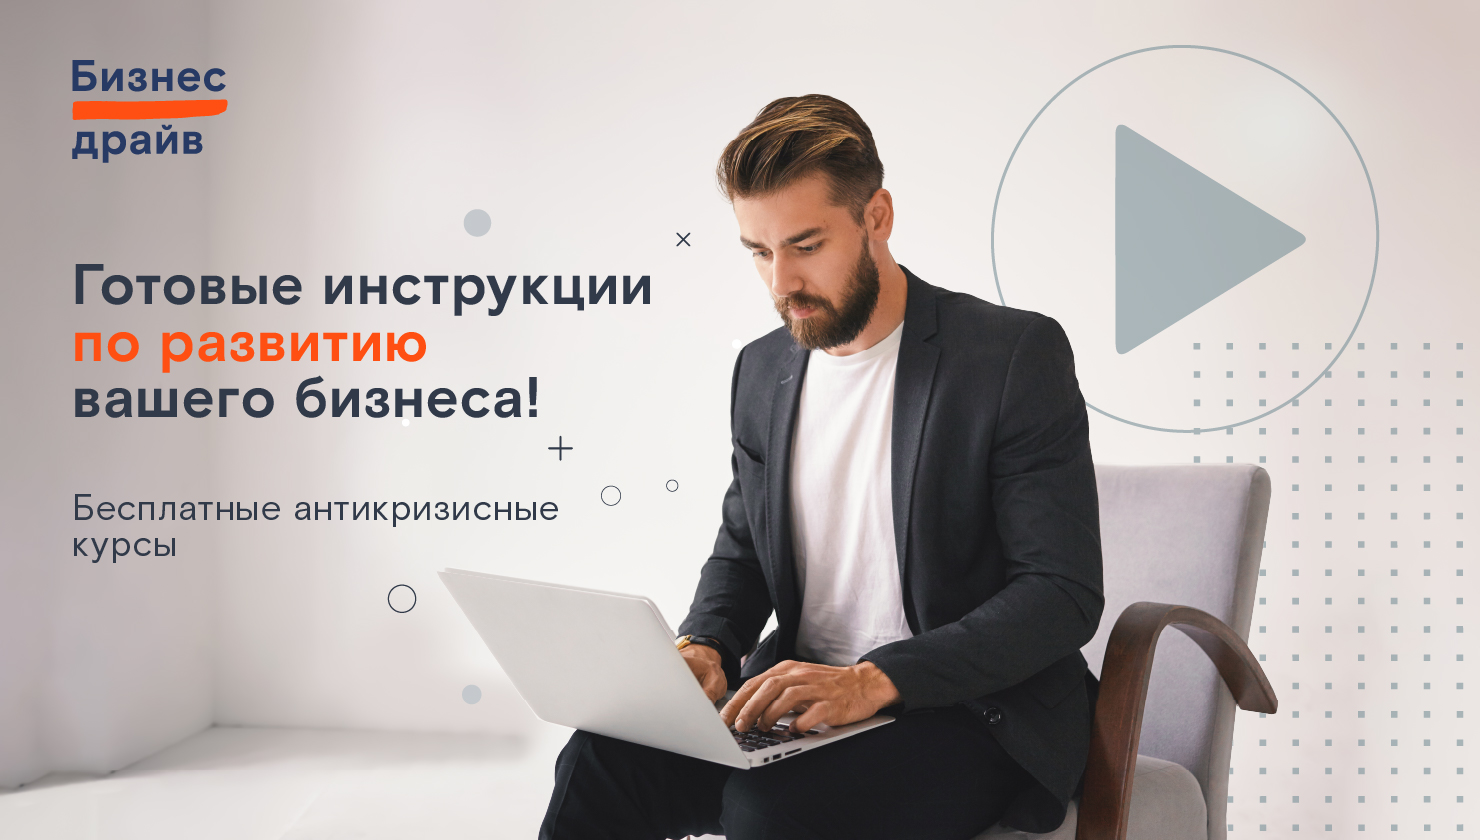 Антикризисные курсы «Ростелекома» помогут российским предпринимателям развивать бизнес в условиях изменений  - новости Афанасий